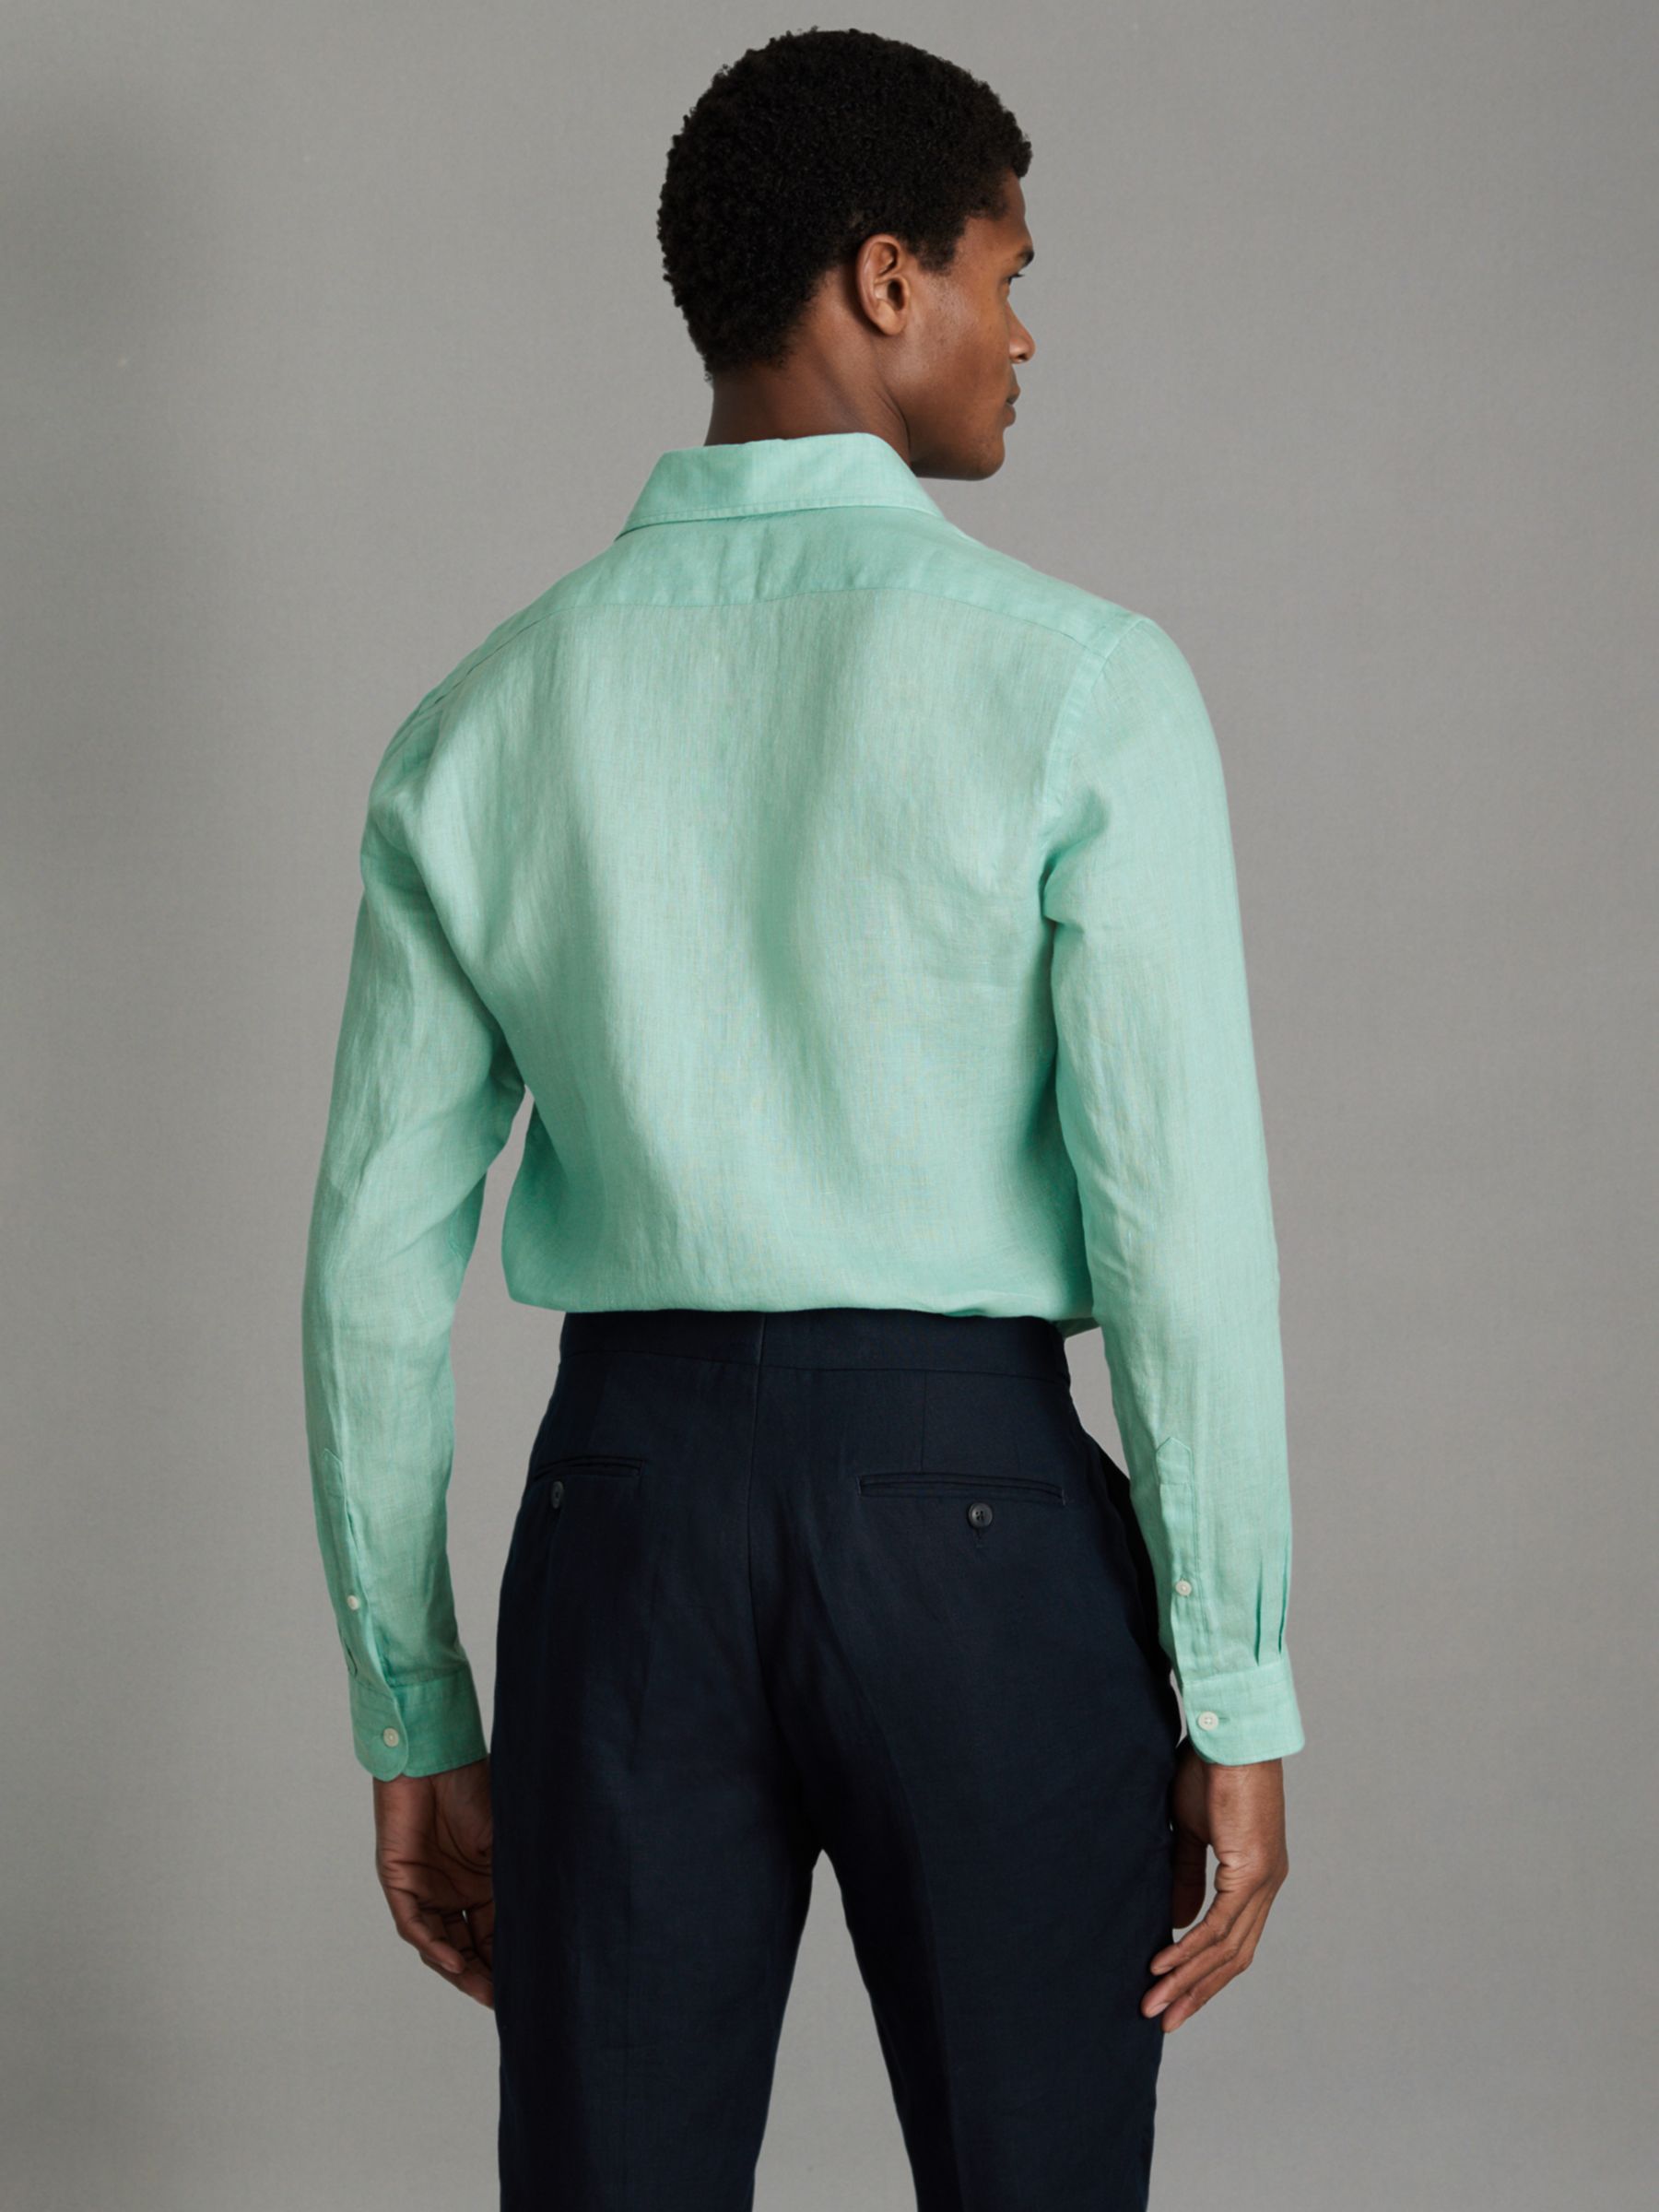 Buy Reiss Ruban Regular Fit Linen Shirt Online at johnlewis.com